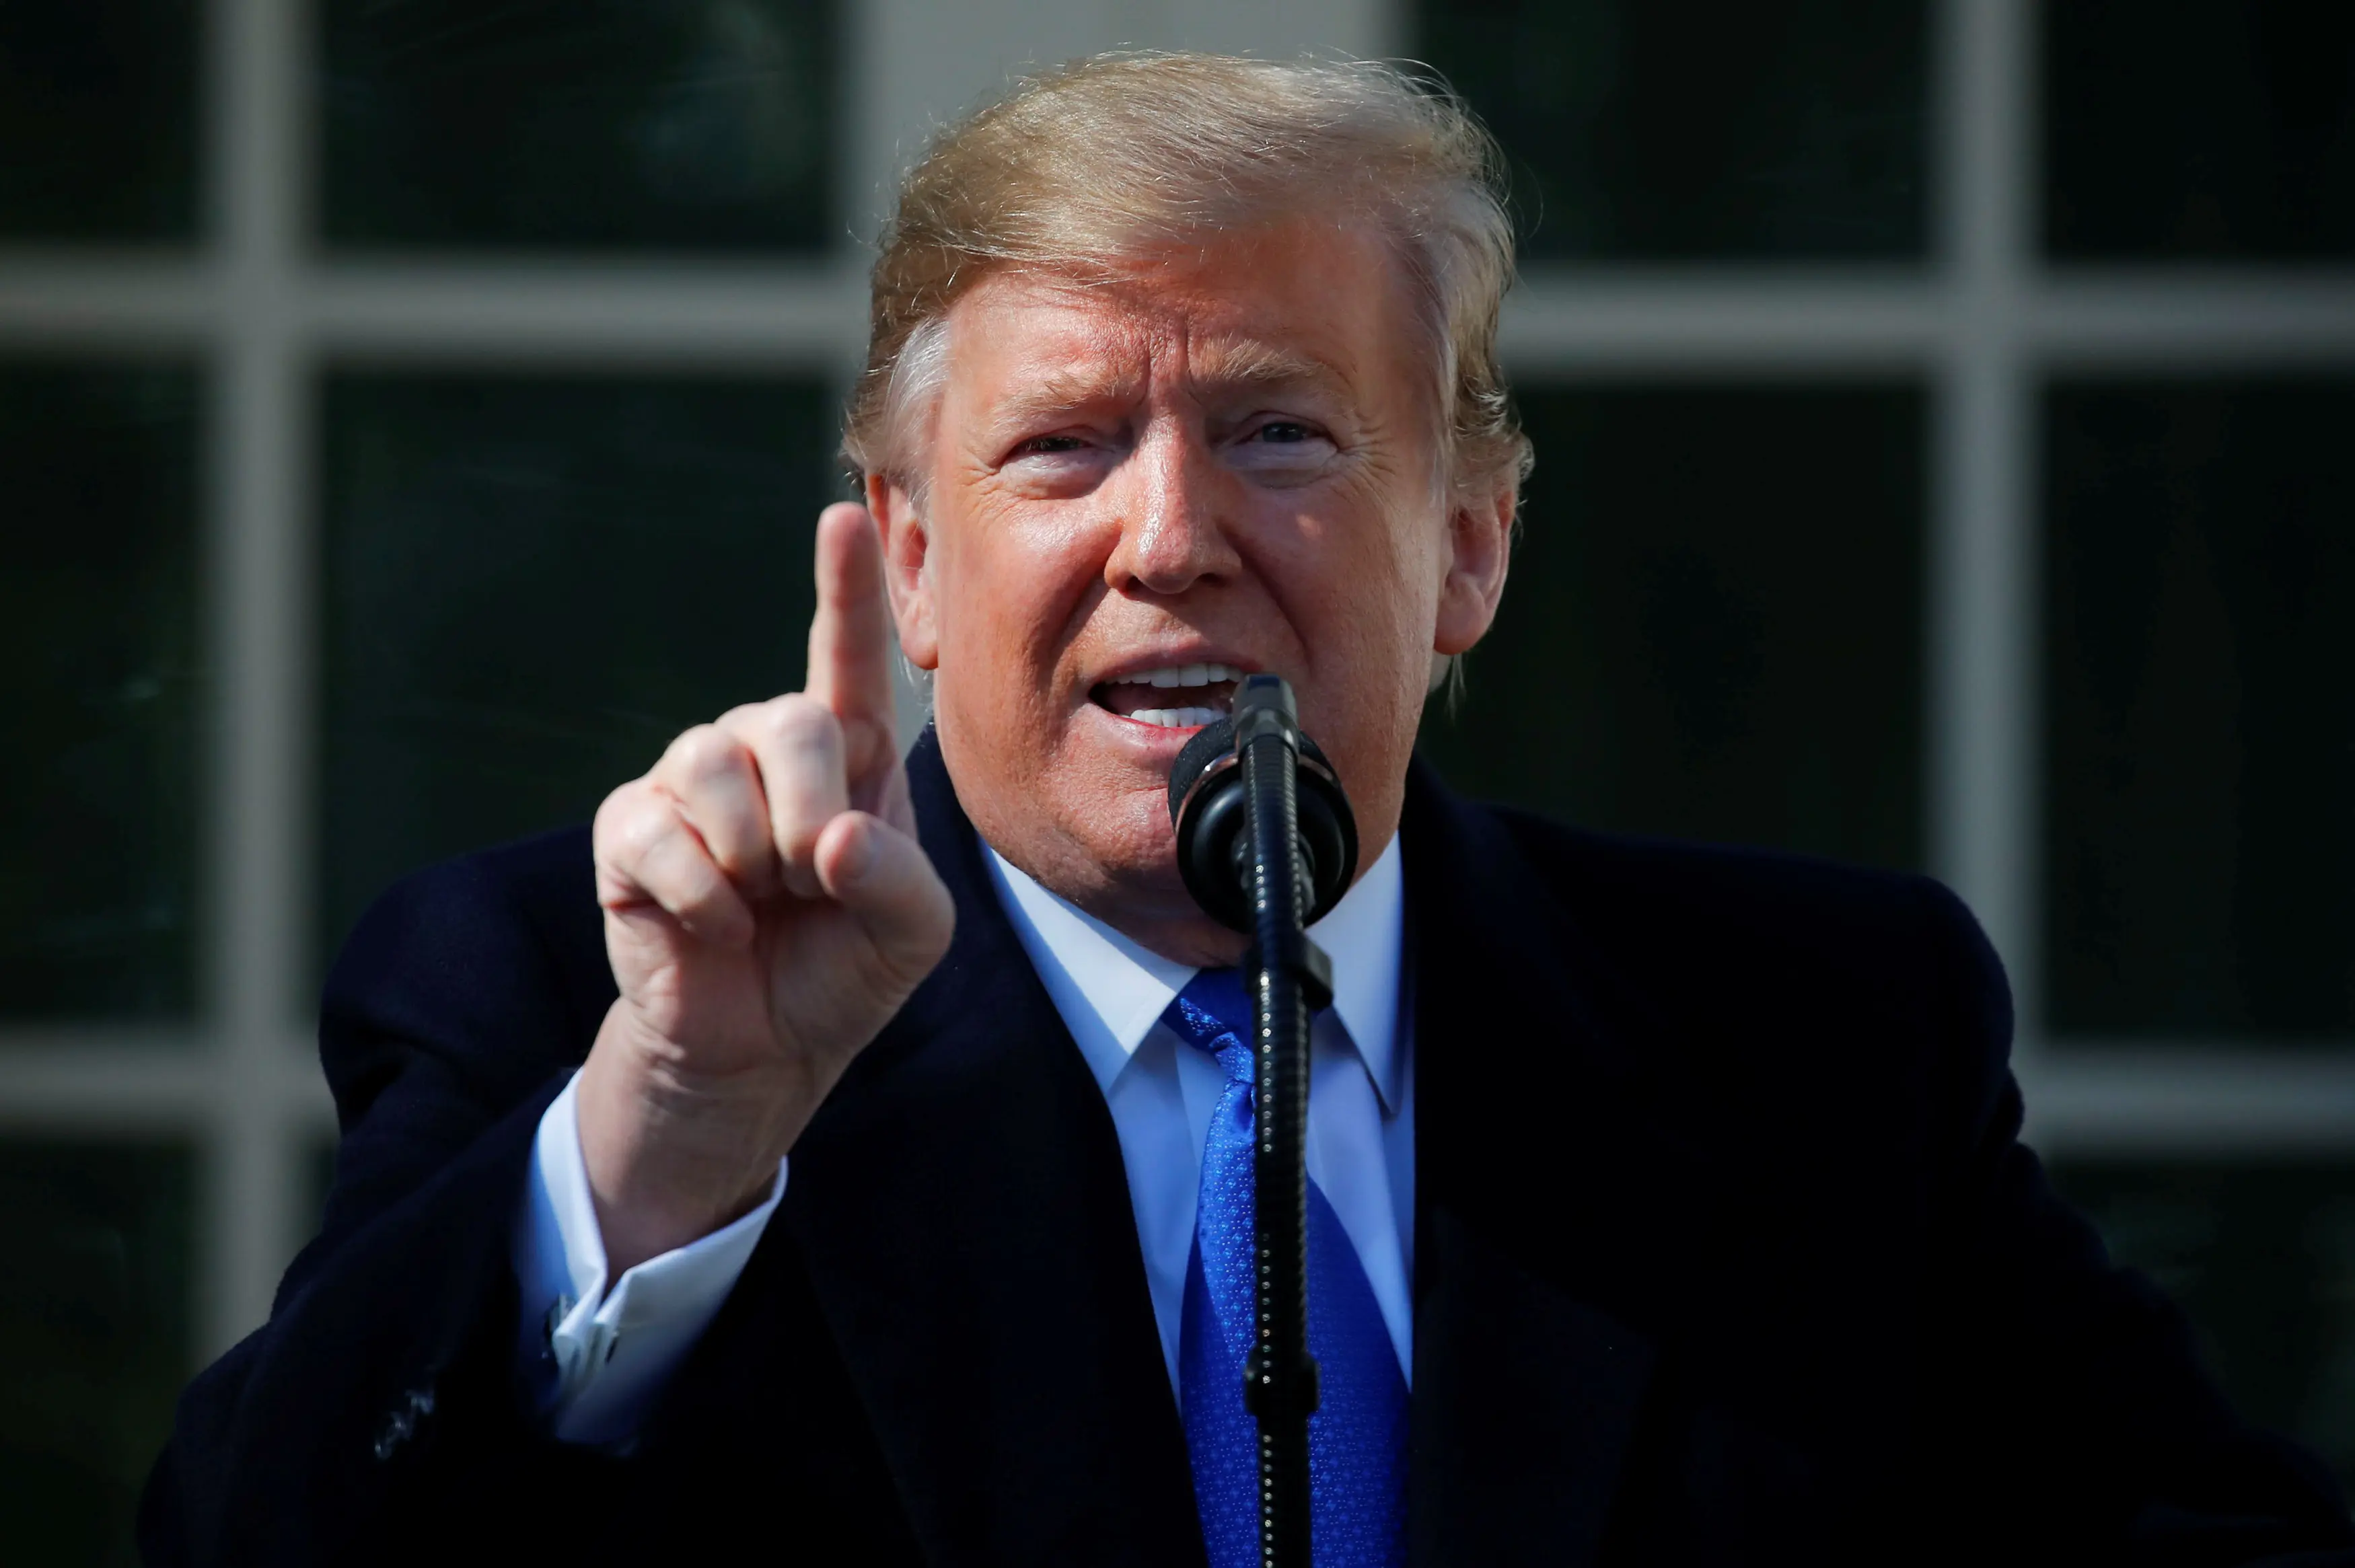 נשיא ארצות הברית דונלד טראמפ מכריז על מצב חירום למימון בניית חומה בגבול מקסיקו בגן הוורדים בבית הלבן ב-15 בפברואר 2019